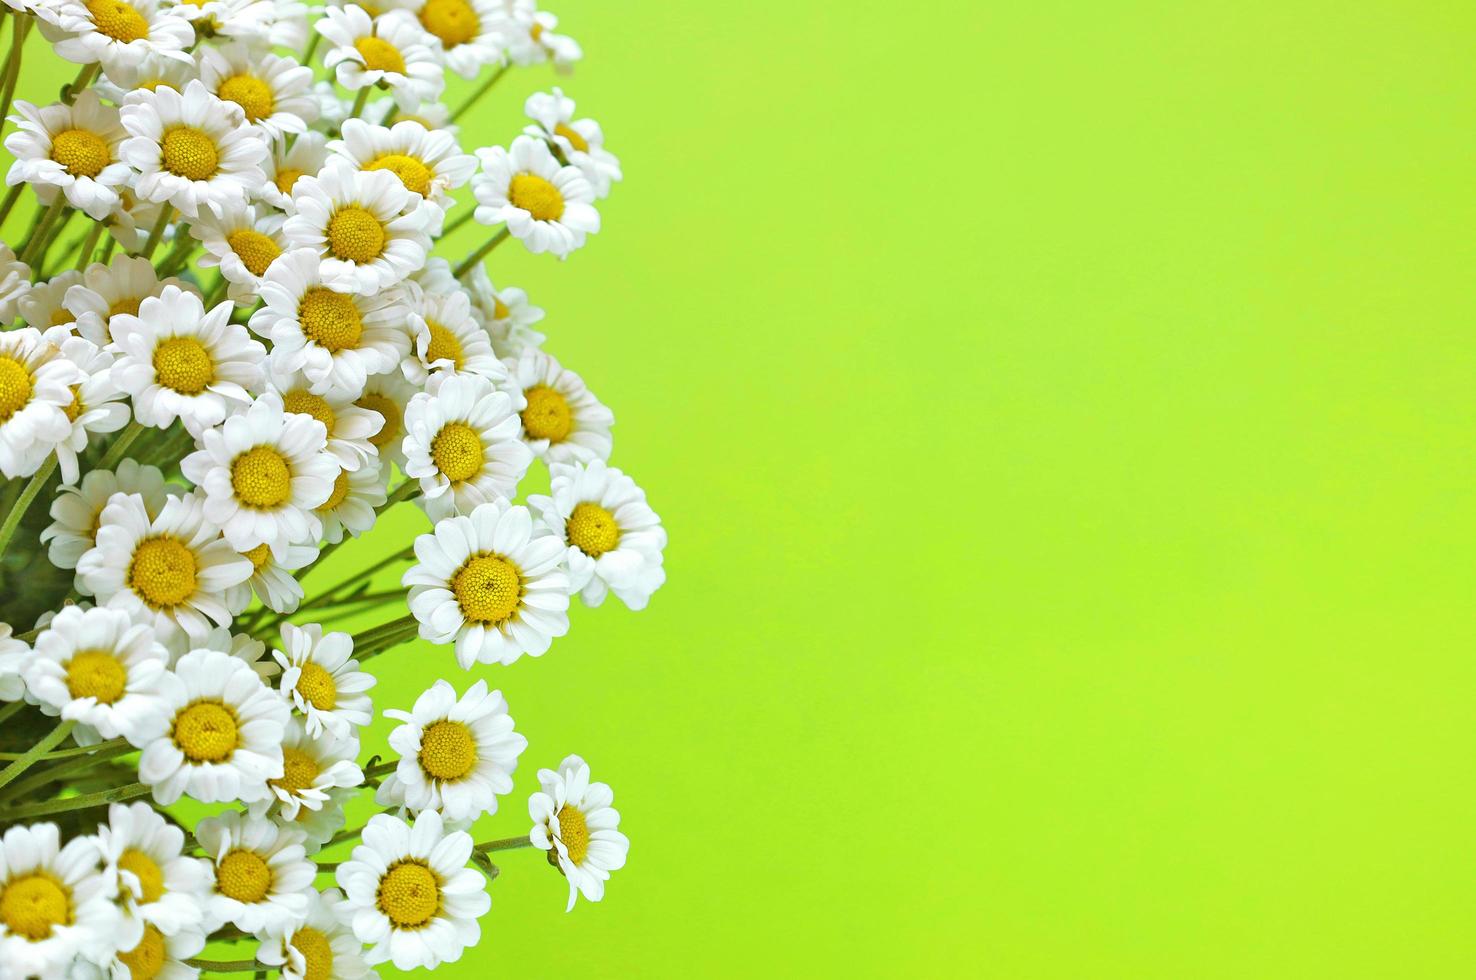 små vita krysantemum ser ut som en kamomillbukett. massa blommor på ljus grön bakgrund. sommar- och vårlov. gratulationskort med plats för text. foto